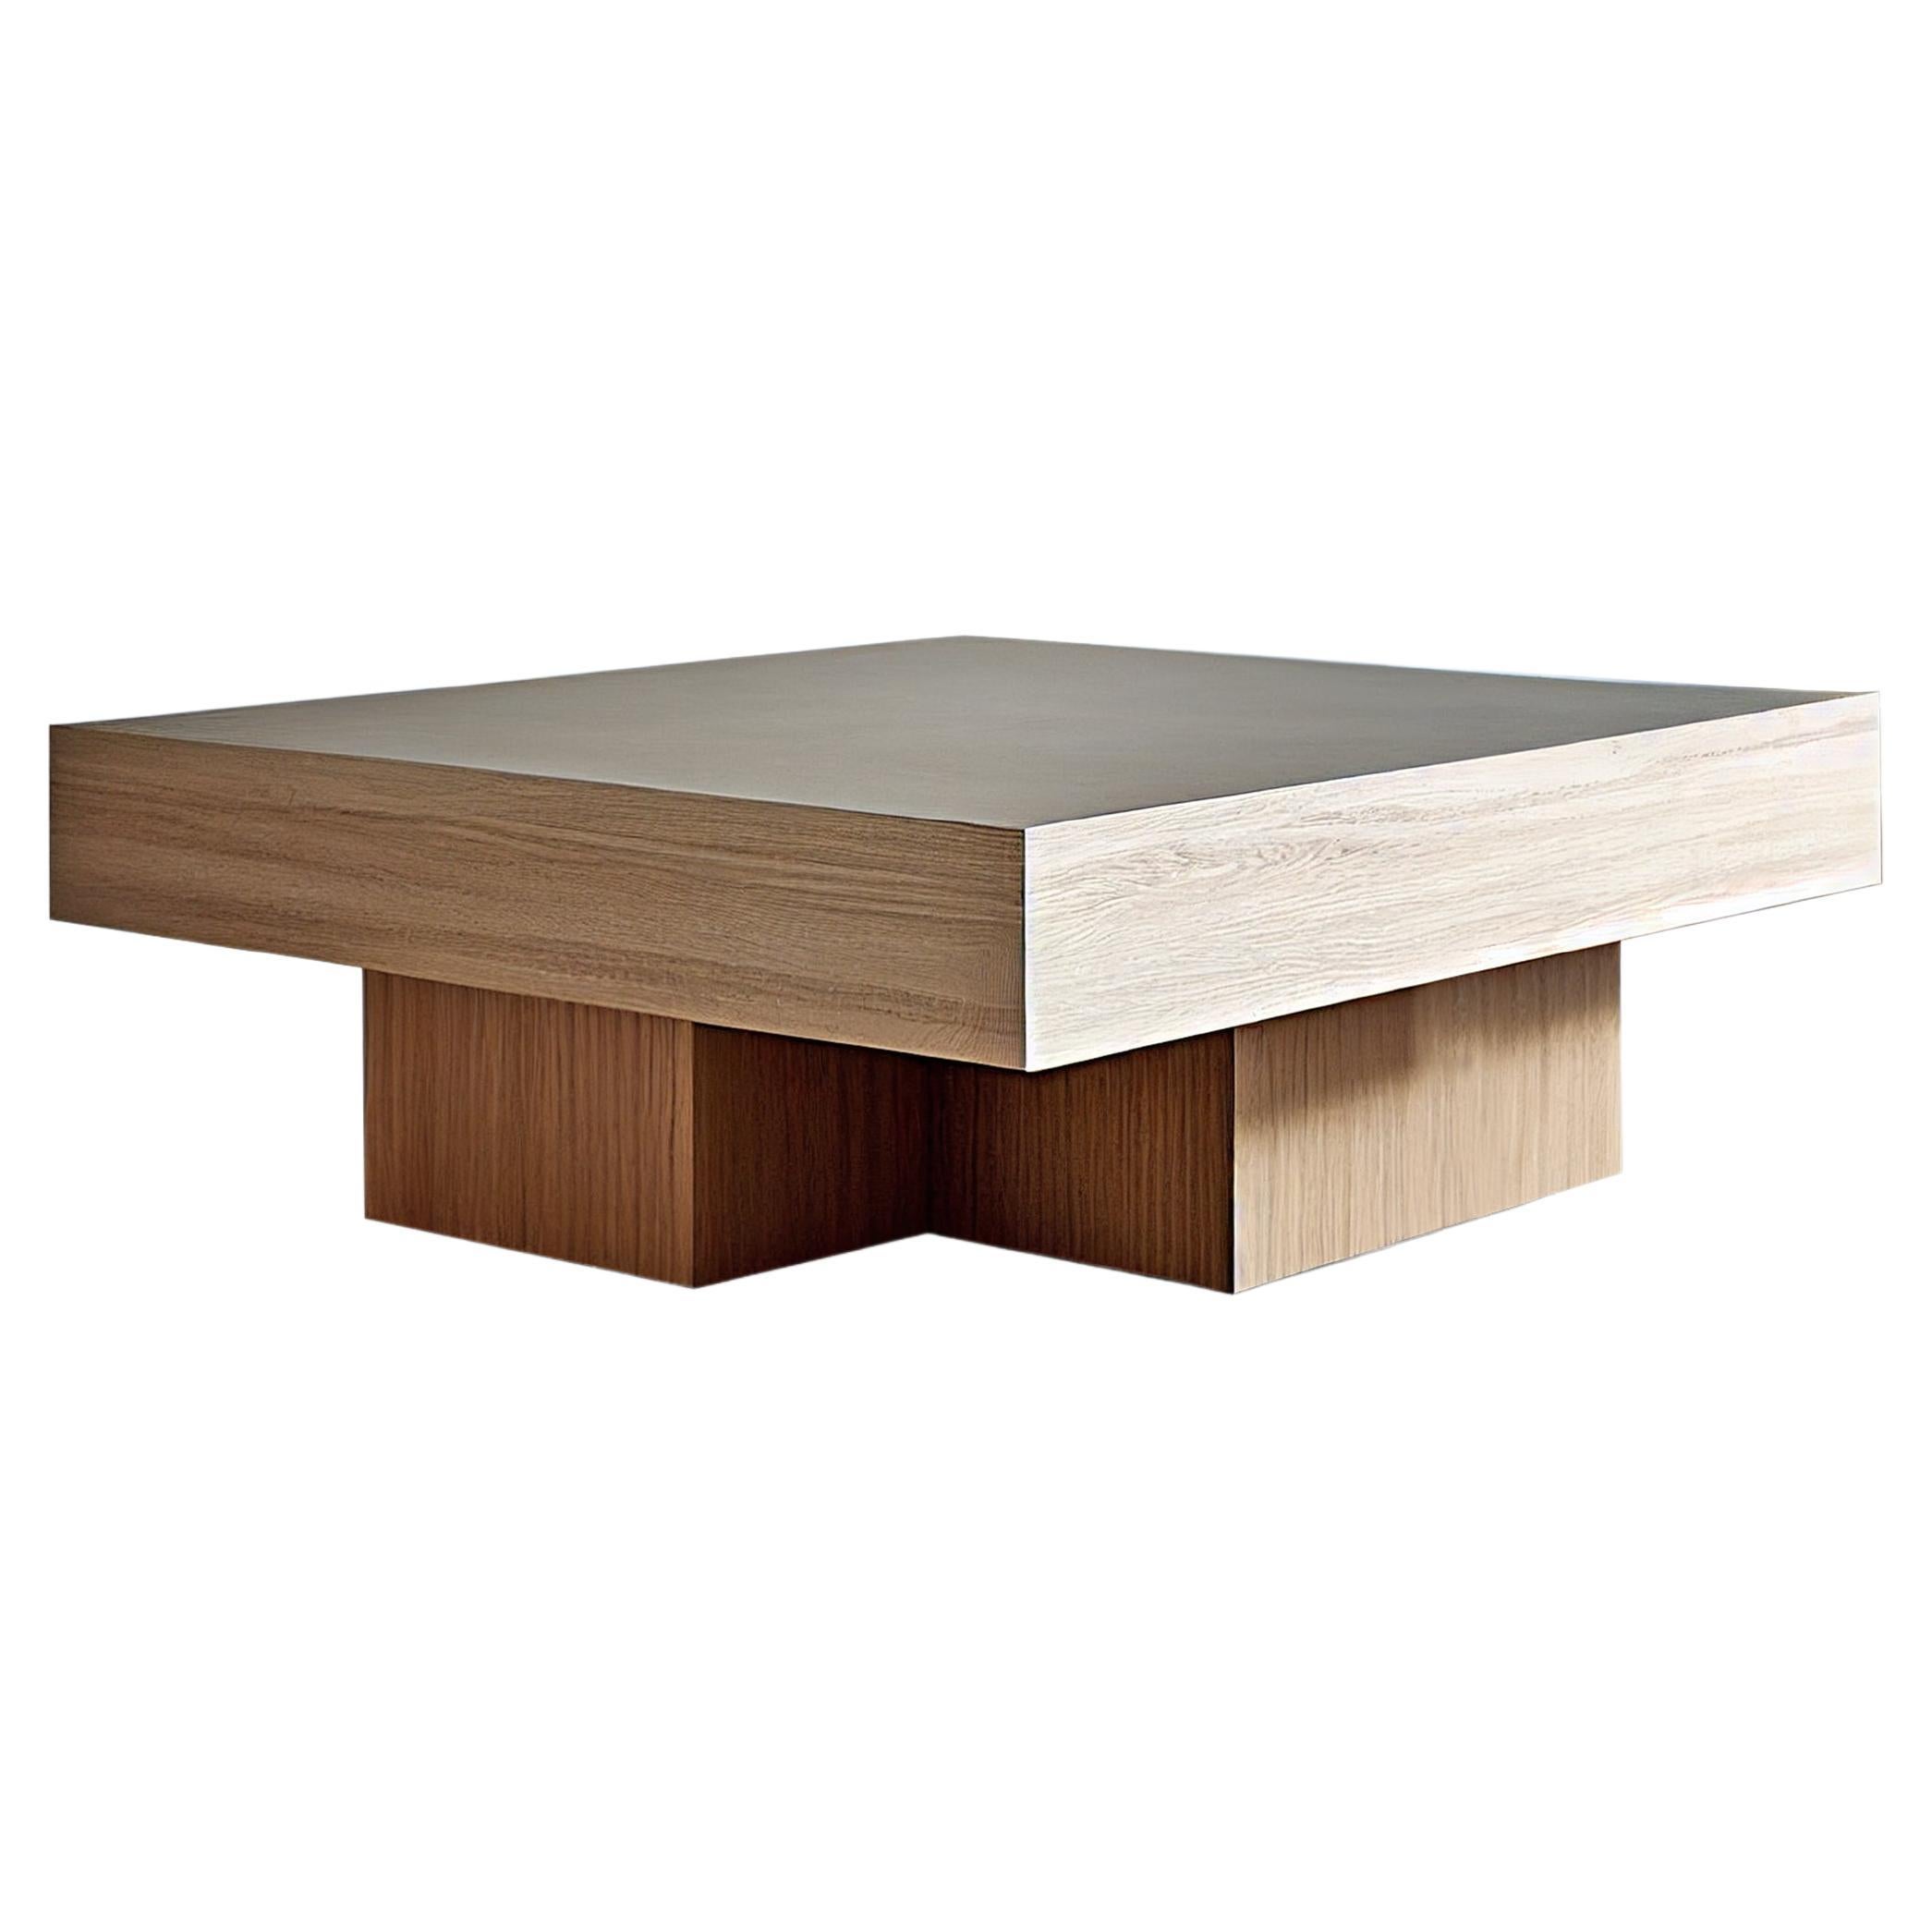 Table basse carrée à base épaisse de forme cruciforme fabriquée avec un magnifique placage de chêne